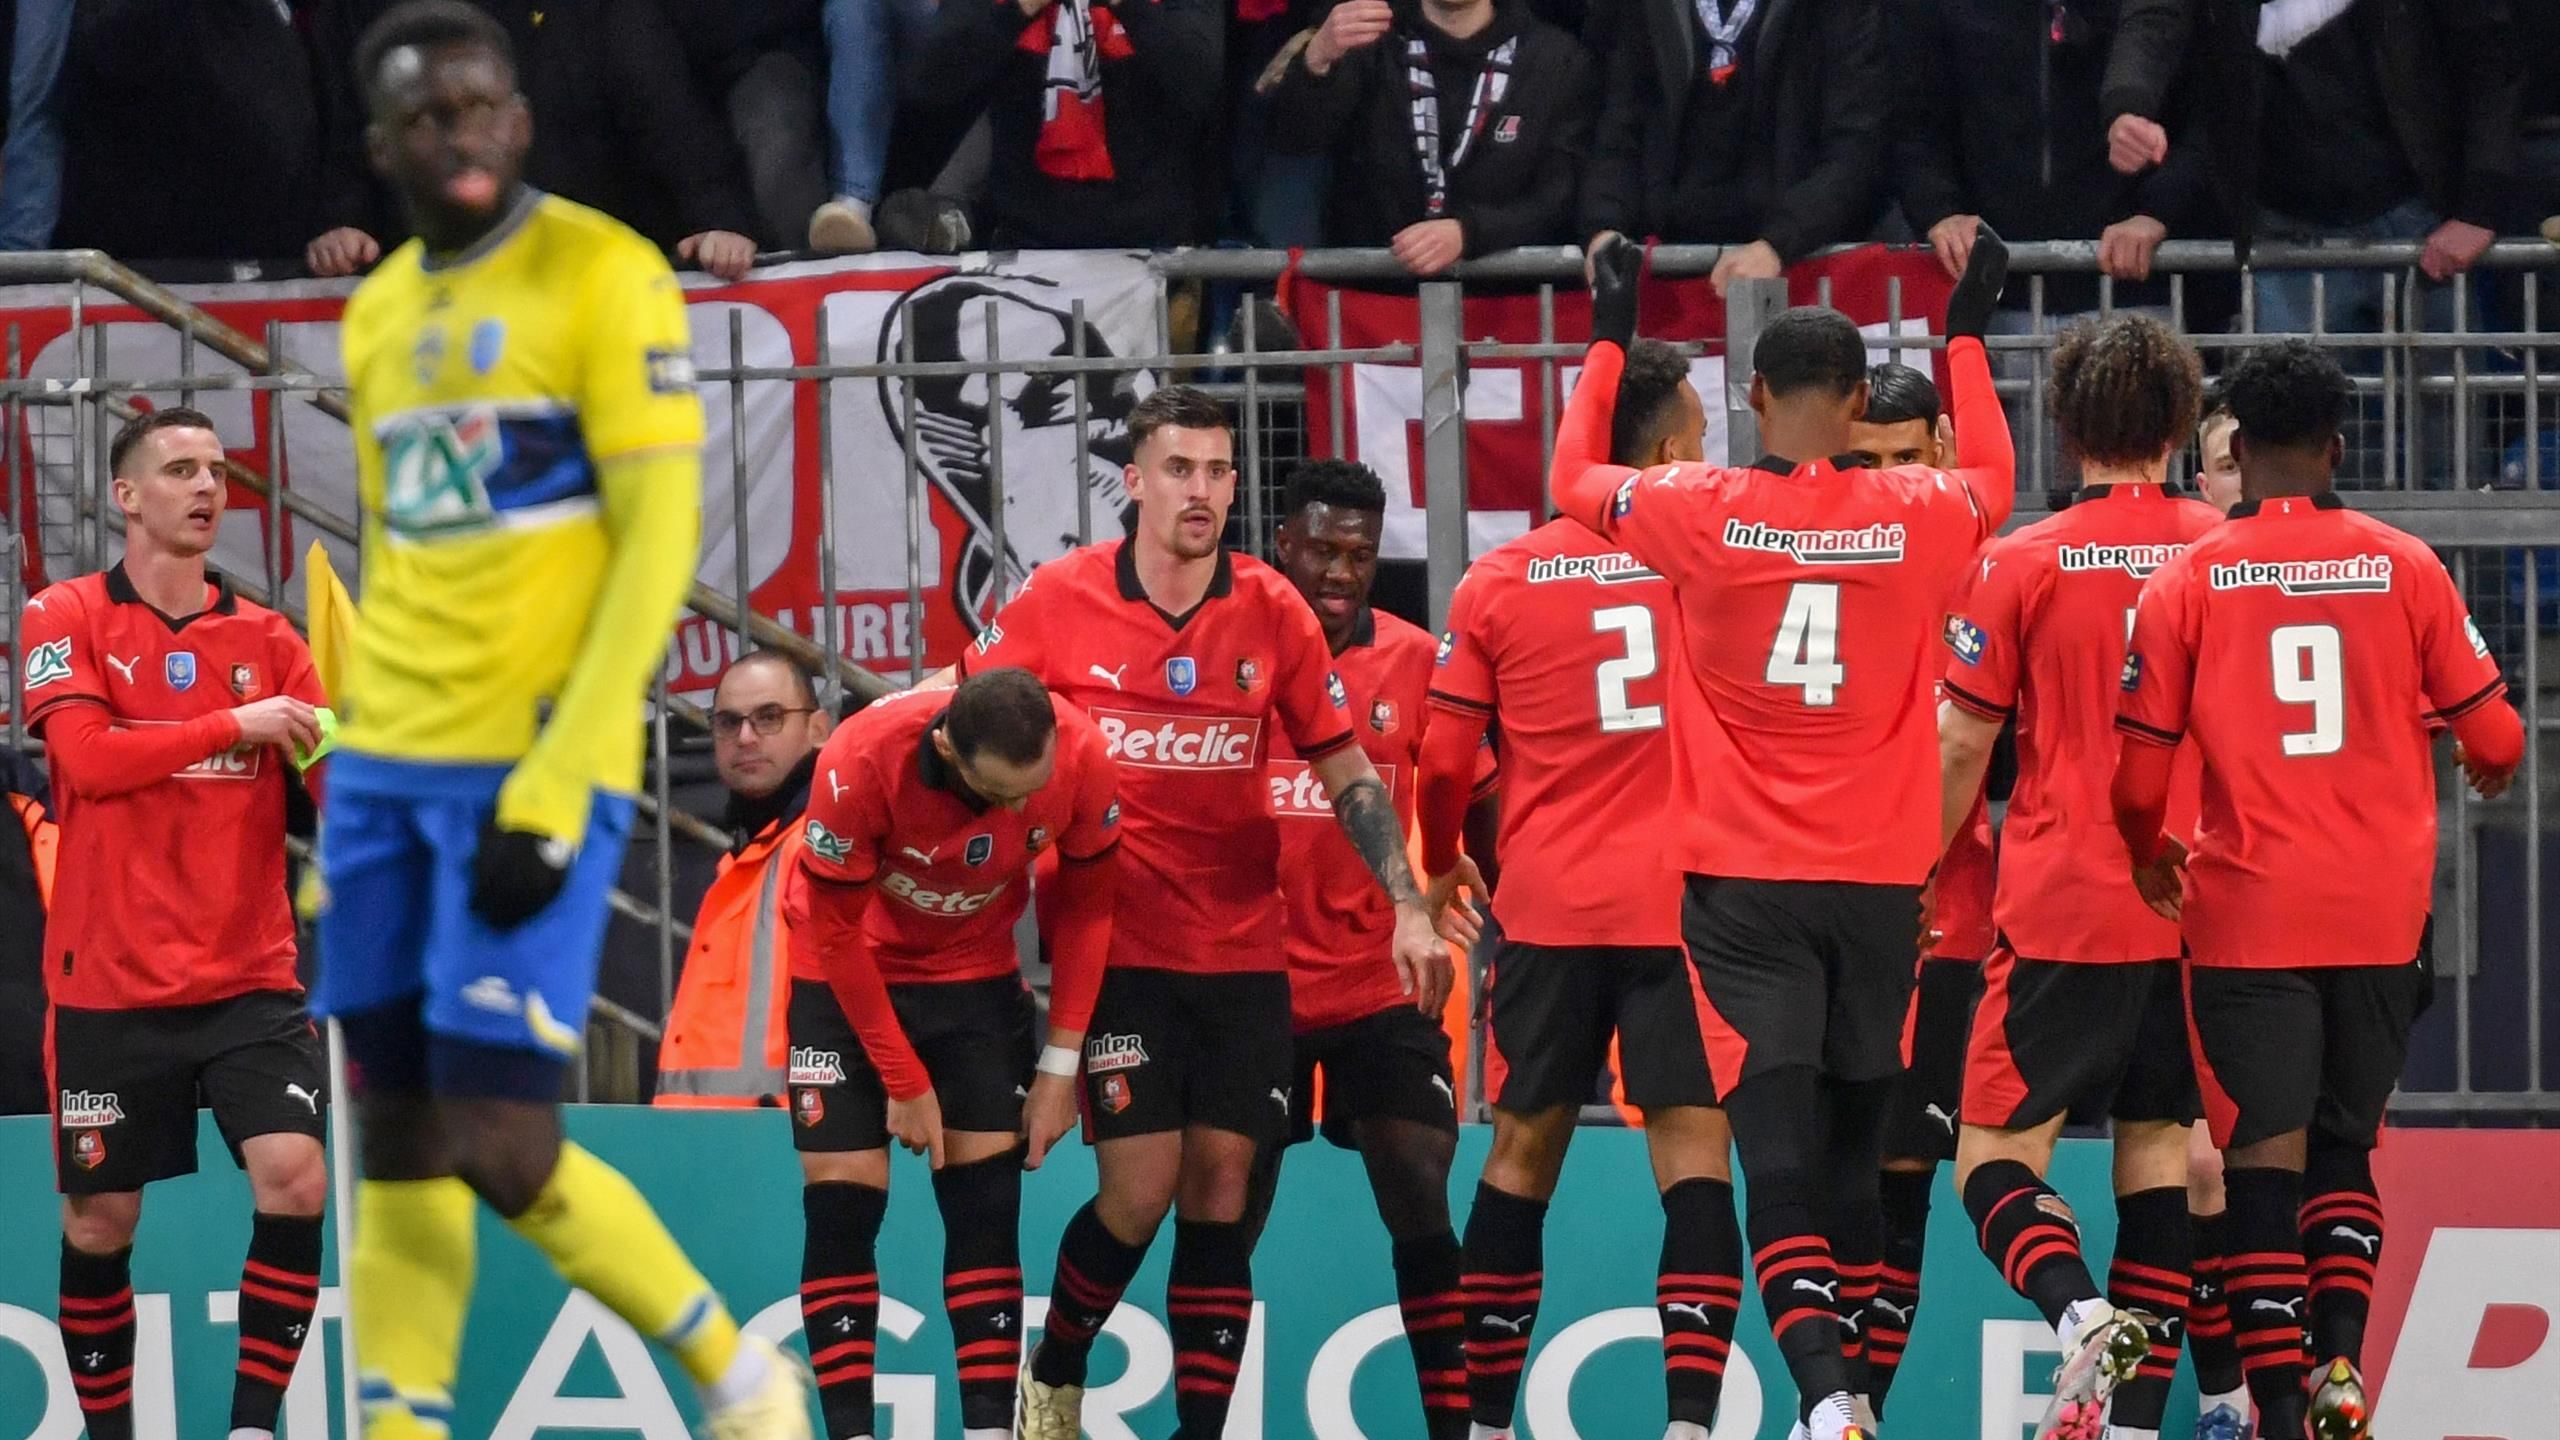 Puchar Francji |  Rennes wygrało dużą przewagą nad Sochaux (6-1) i nie chce niczego odkładać do końca zawodów